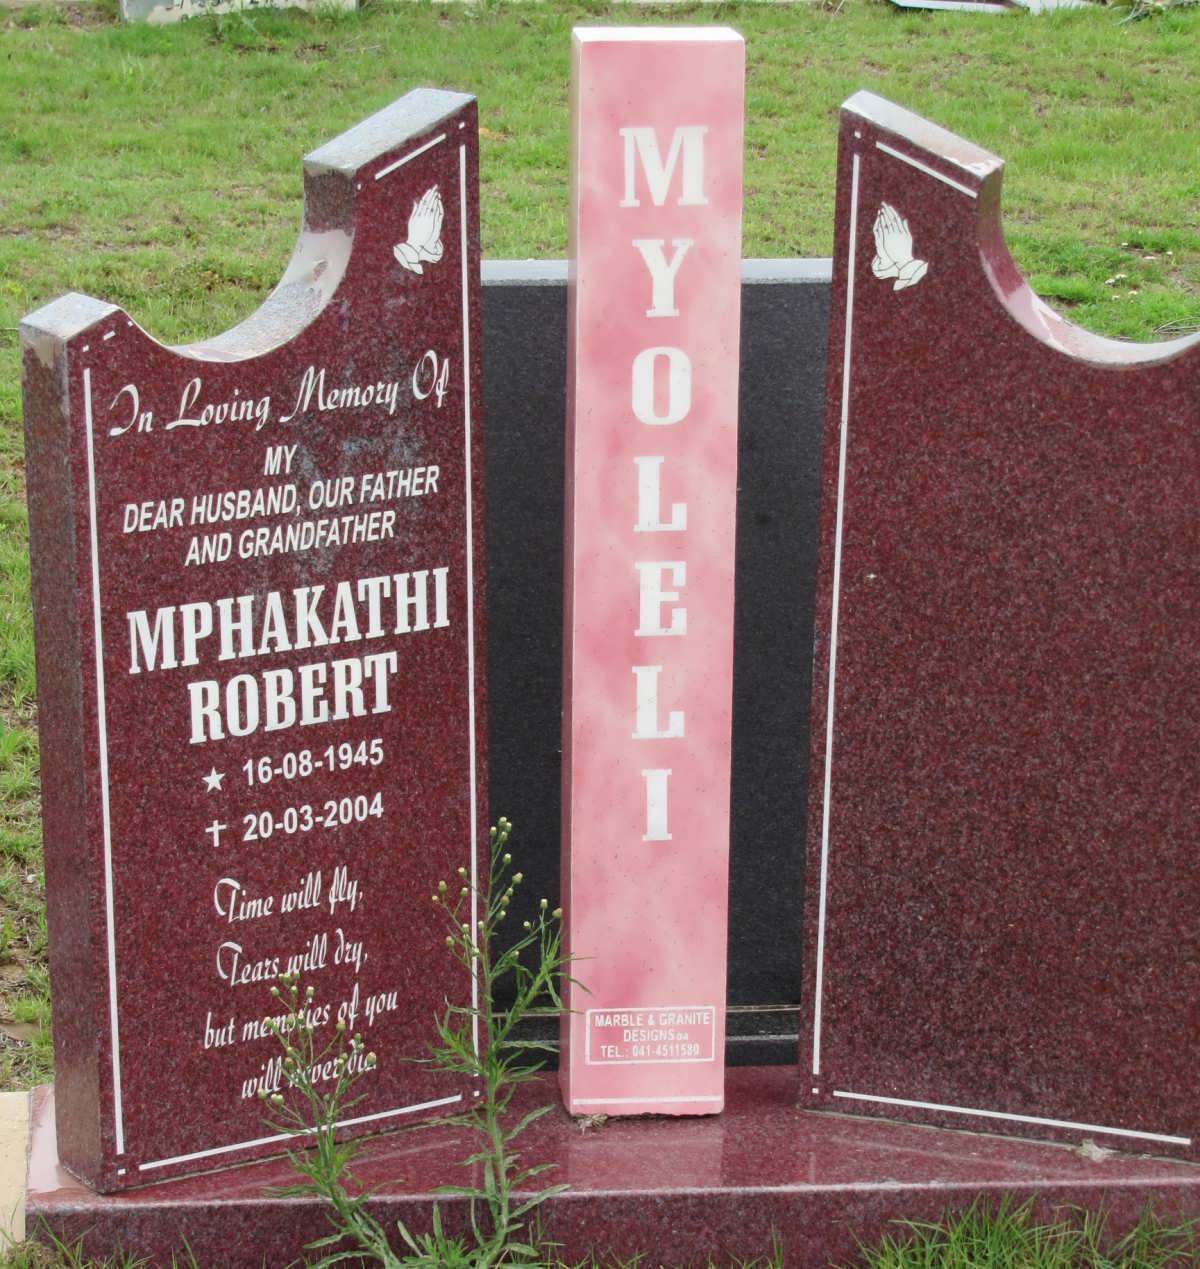 MYOLELI Mphakathi Robert 1945-2004